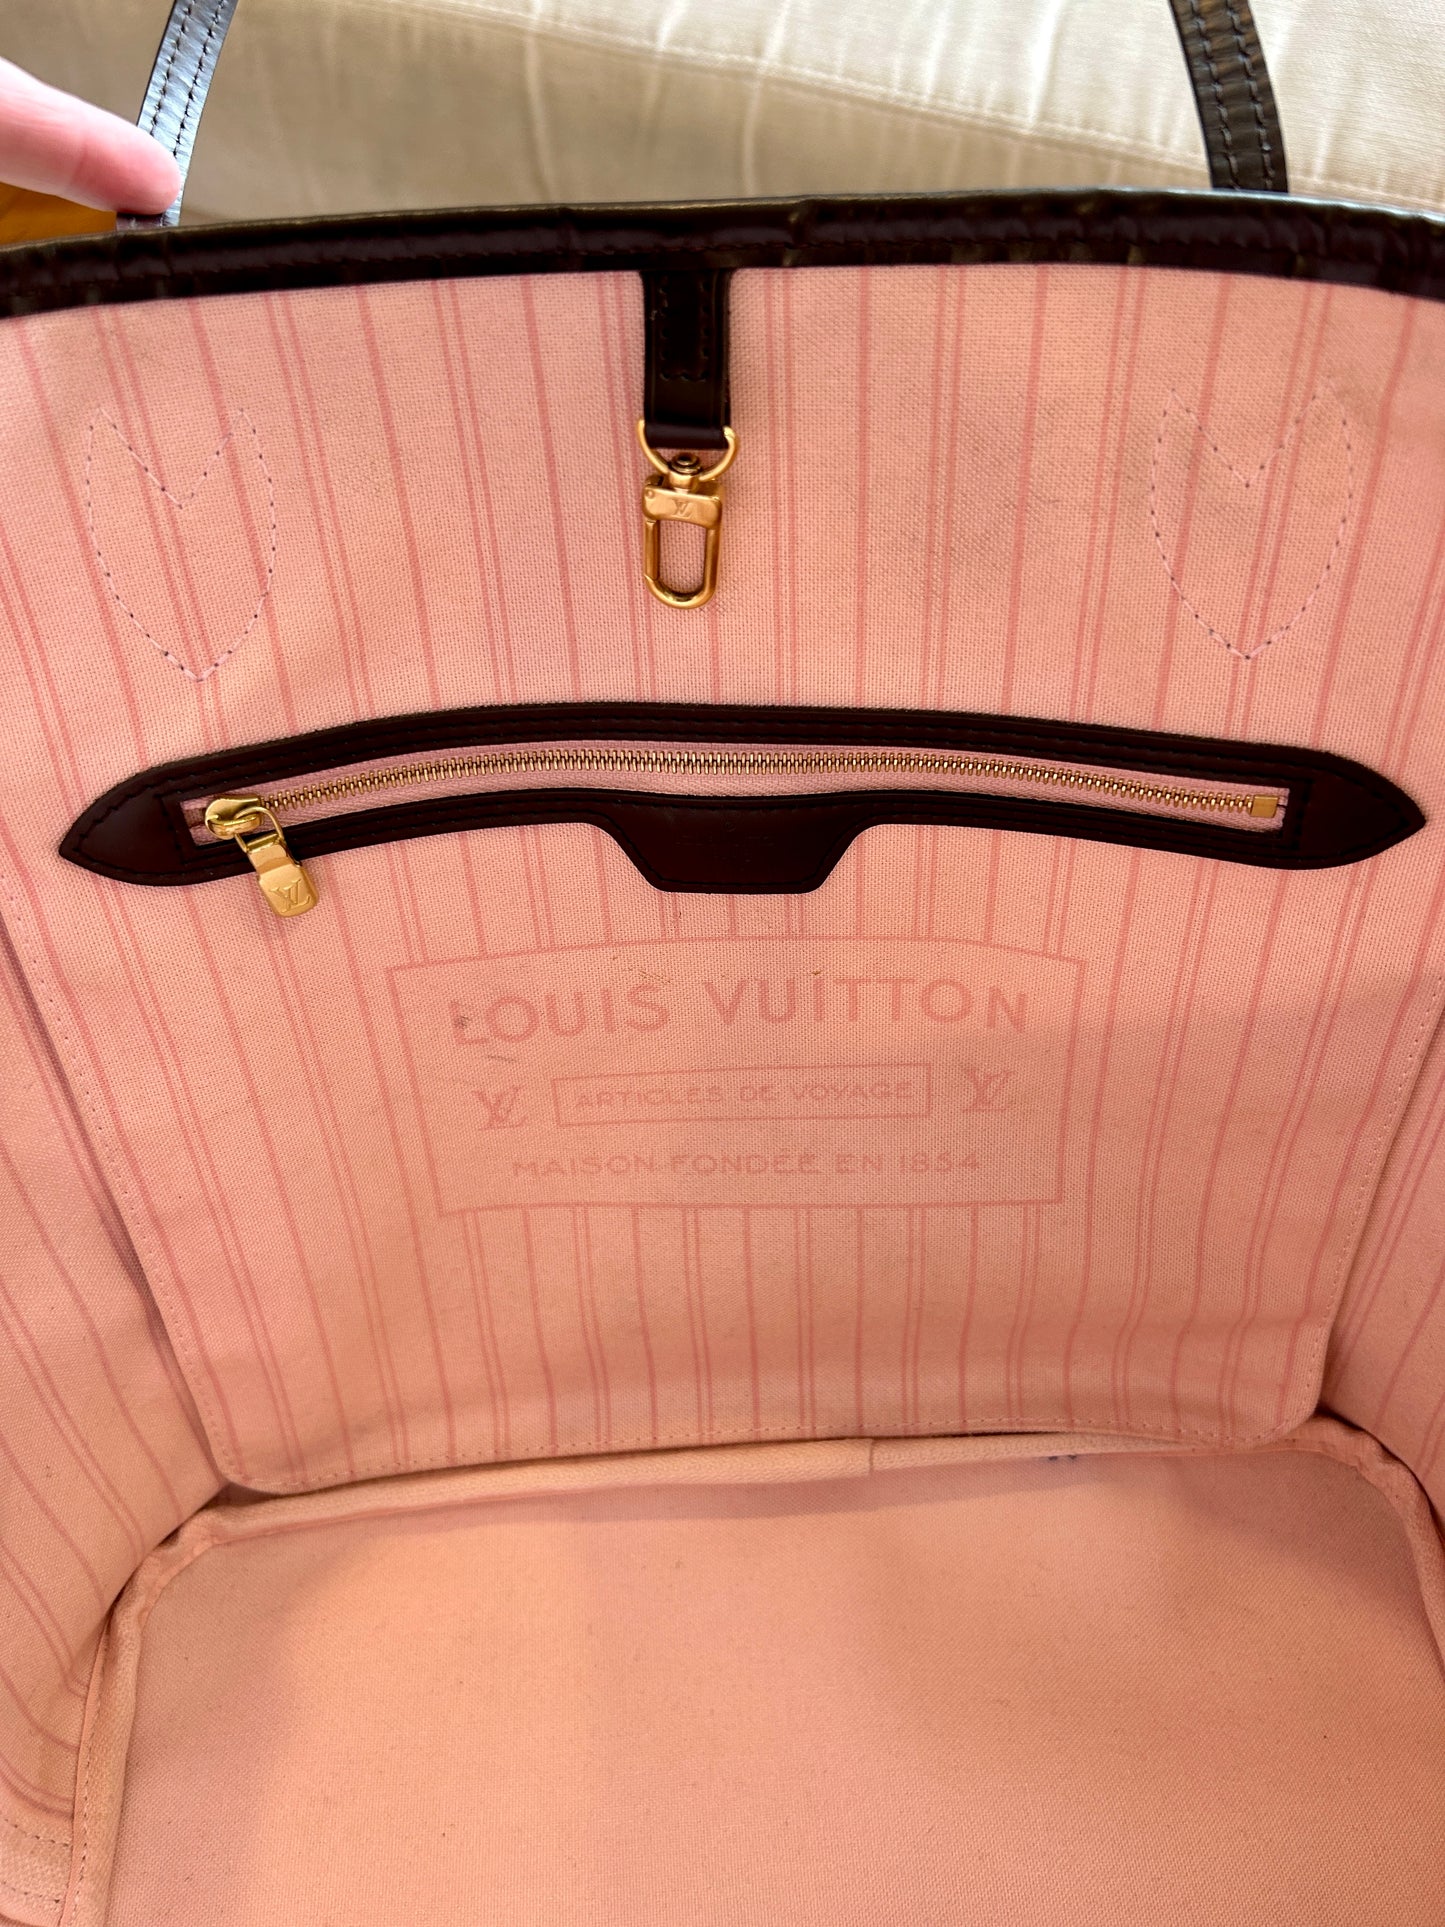 Louis Vuitton neverfull damier ebene with Rose ballerine …